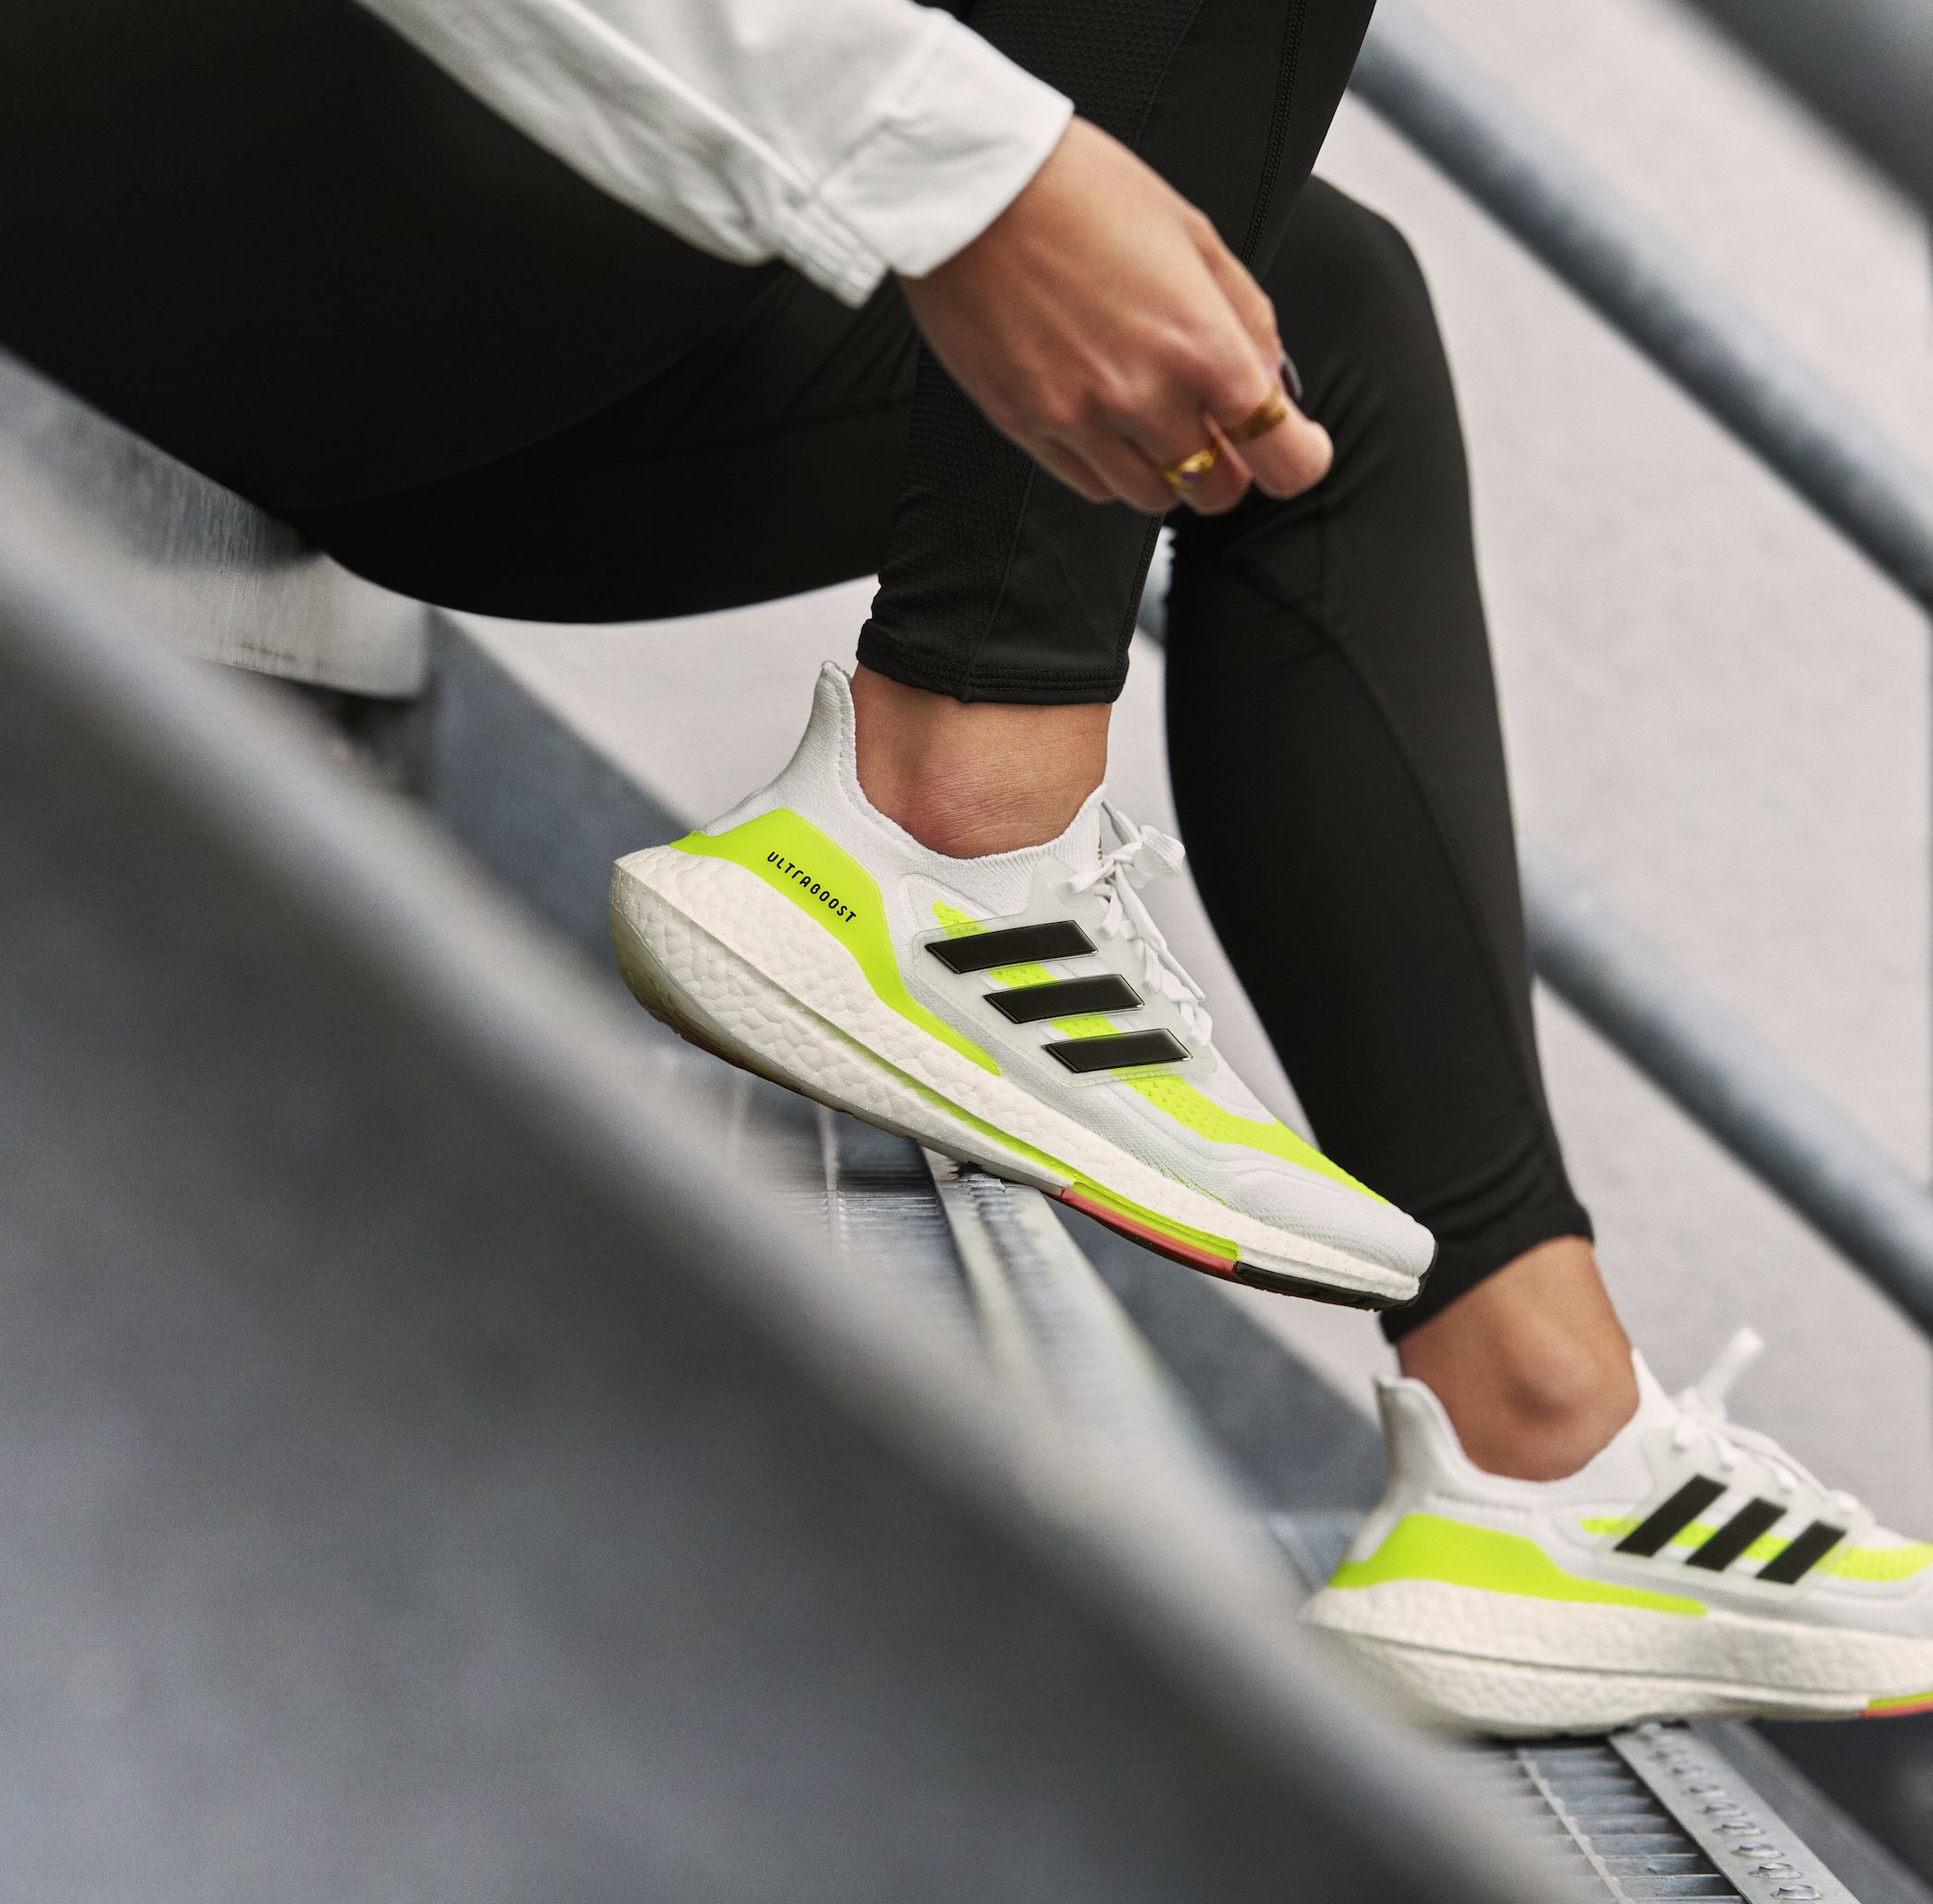 Adidas’ Ultraboost 21